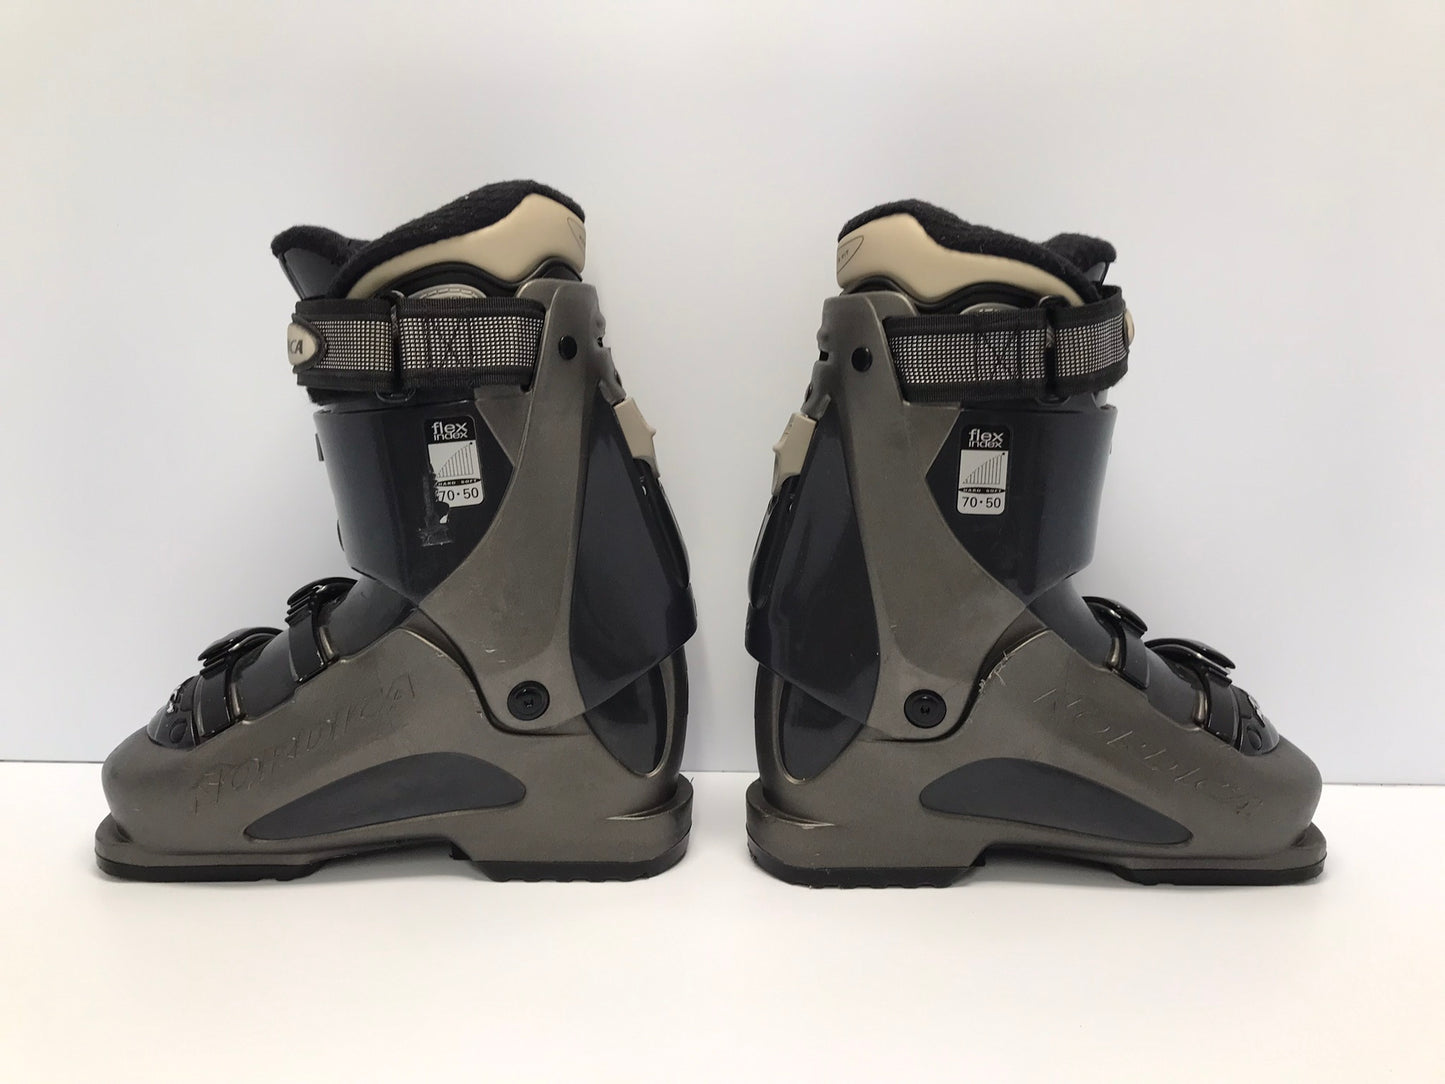 Ski Boots Mondo Size 23.0 Men's Size 5 Ladies Size 6 270 mm Nordica Grey Black Excellent